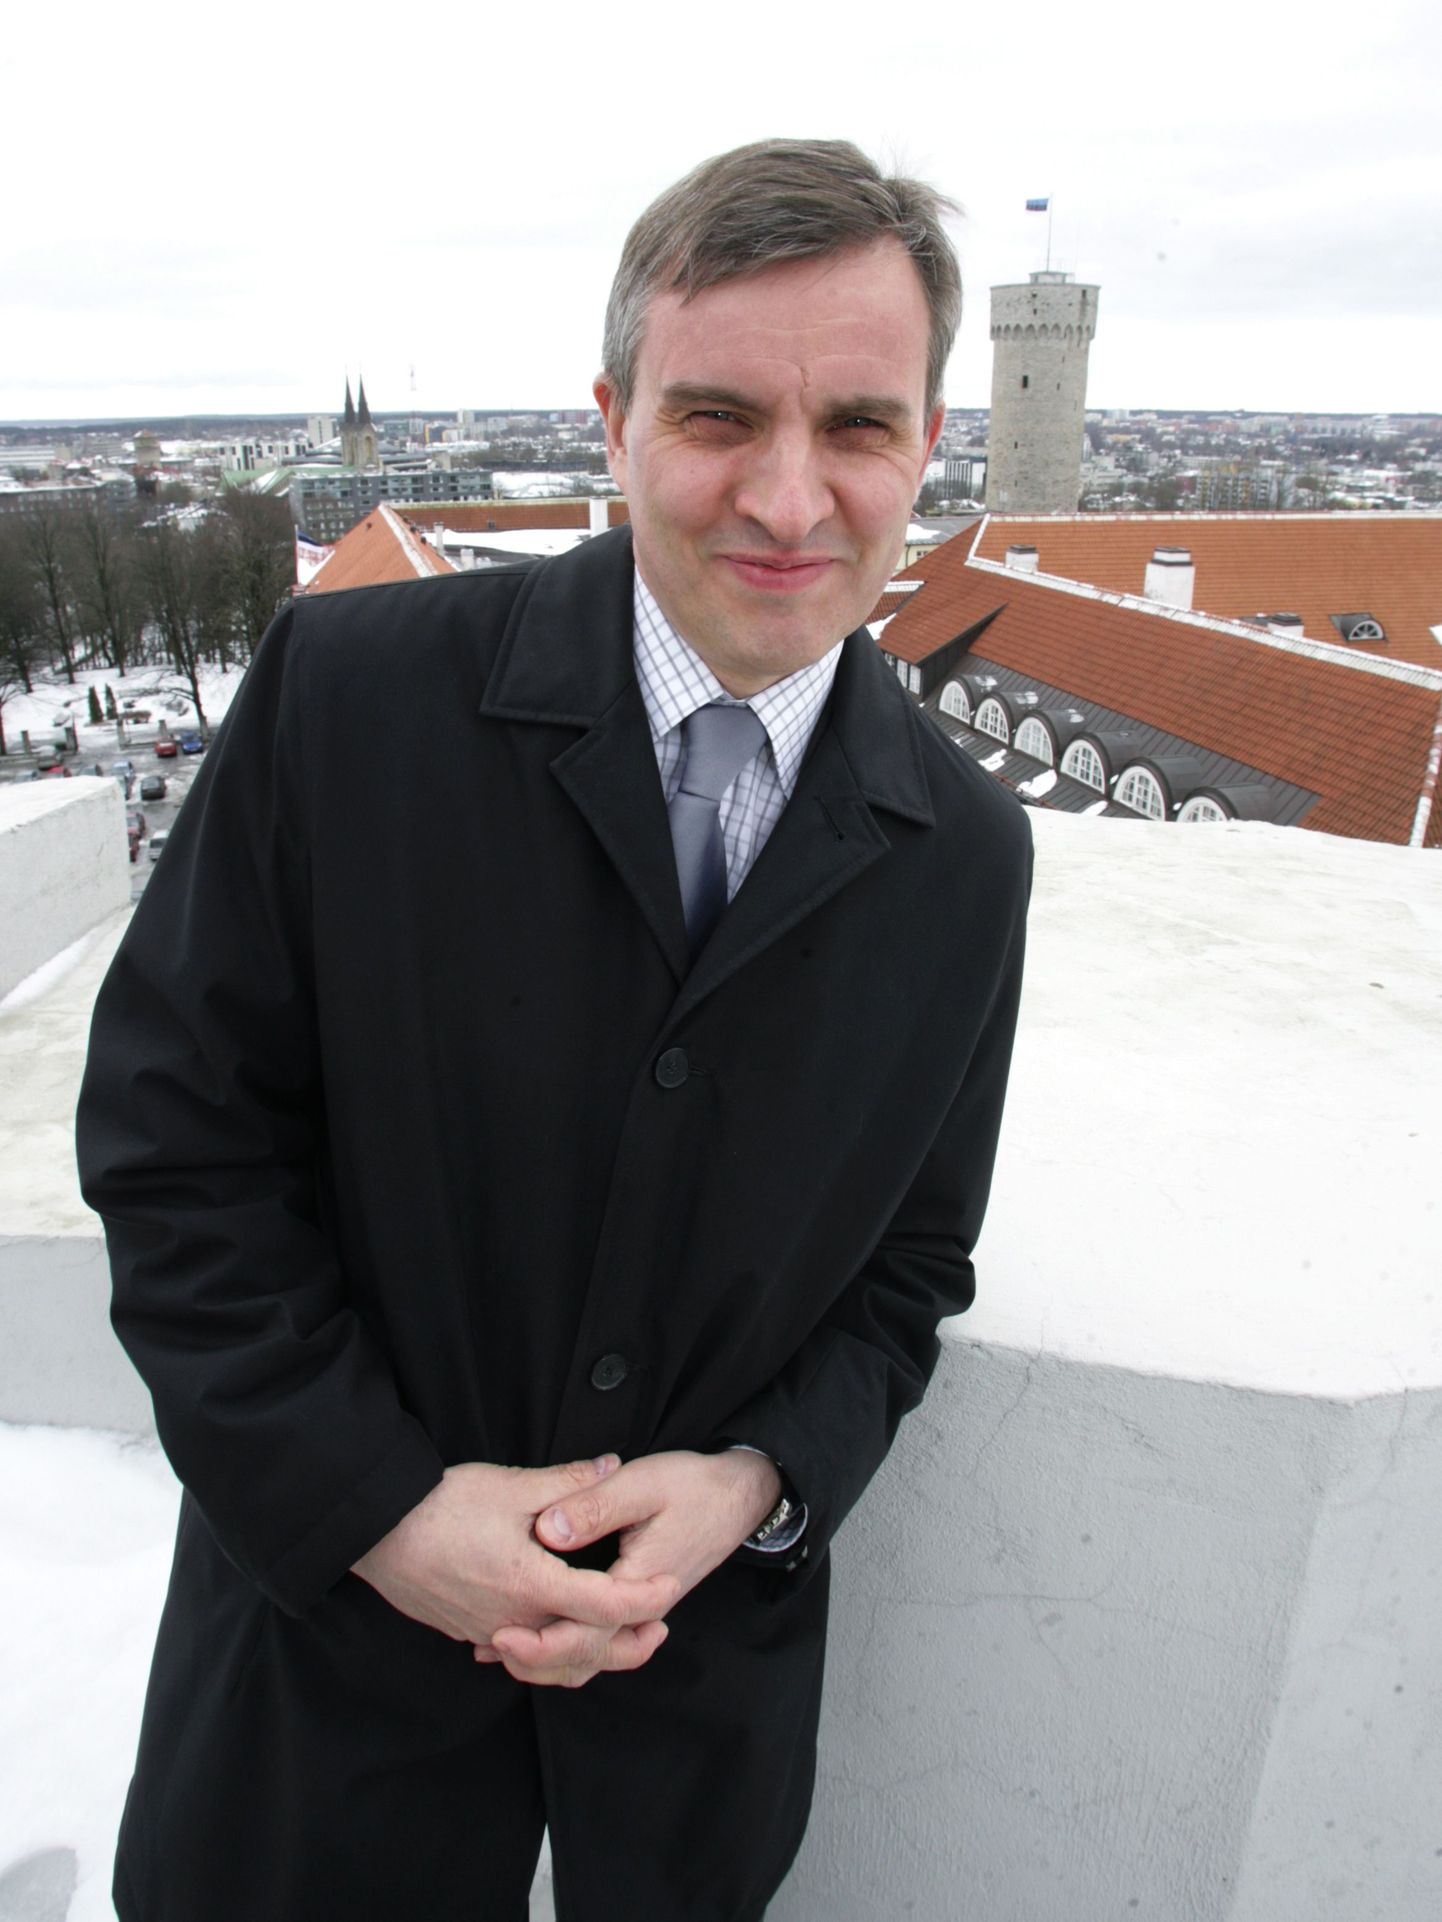 По мнению спикеров Эне Эргма, Лайне Рандъярв и Юри Ратаса, уходящий с поста главы канцелярии парламента Хейки Сибуль (на снимке) послужил эстонскому государству аж на 22 тысячи евро.